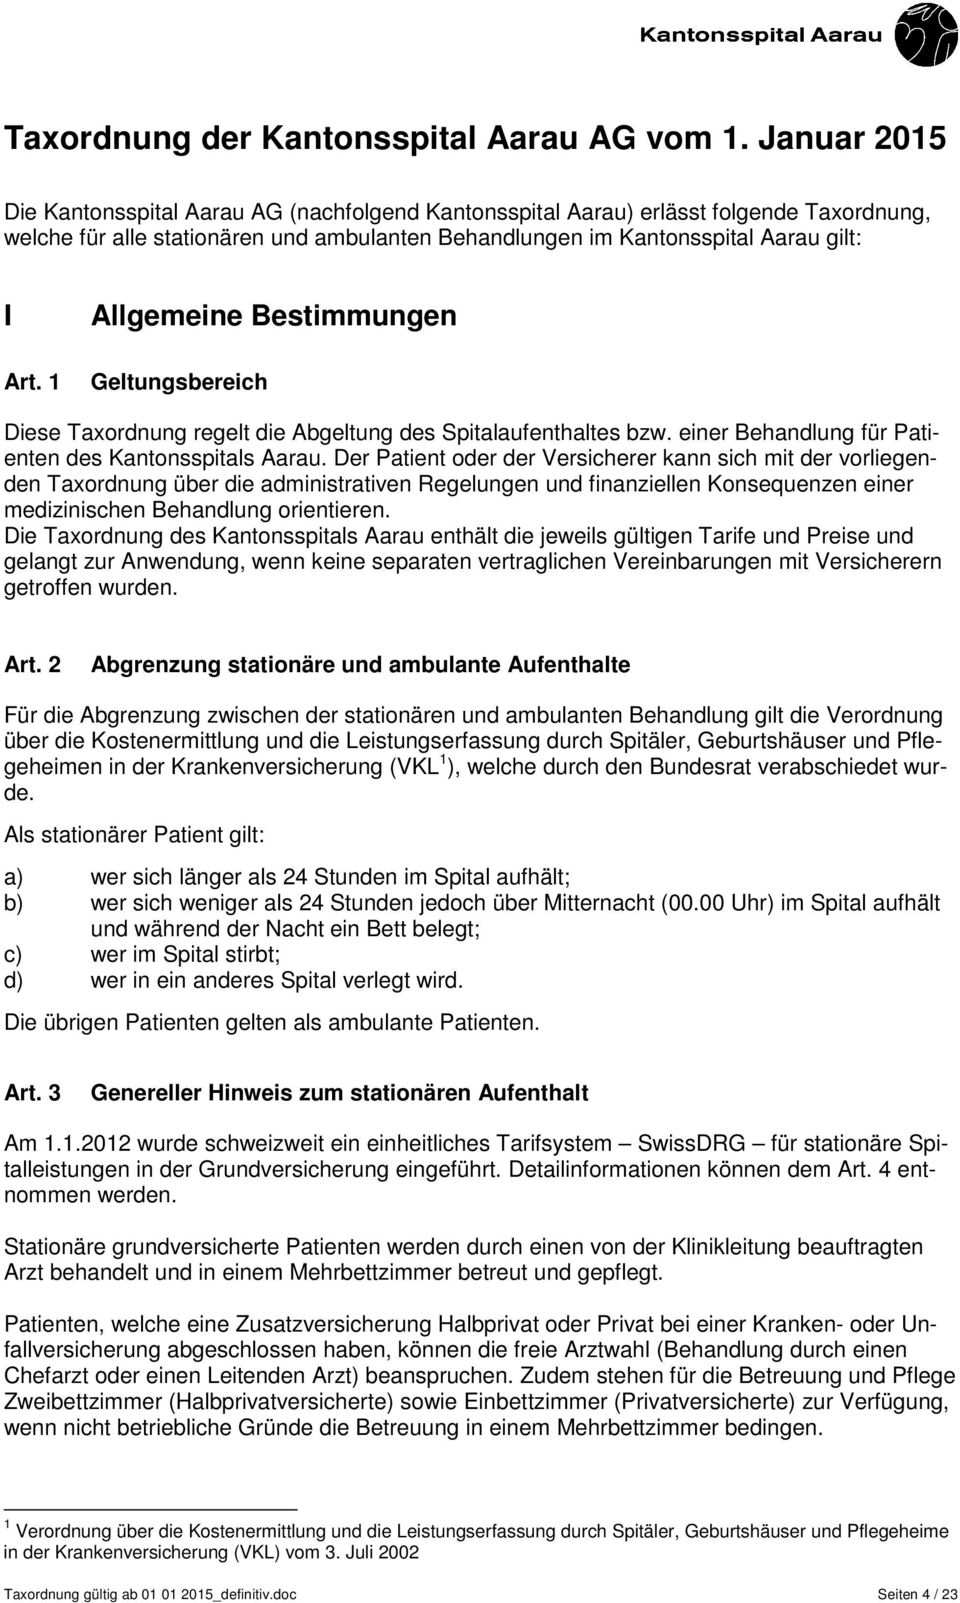 1 Allgemeine Bestimmungen Geltungsbereich Diese Taxordnung regelt die Abgeltung des Spitalaufenthaltes bzw. einer Behandlung für Patienten des Kantonsspitals Aarau.